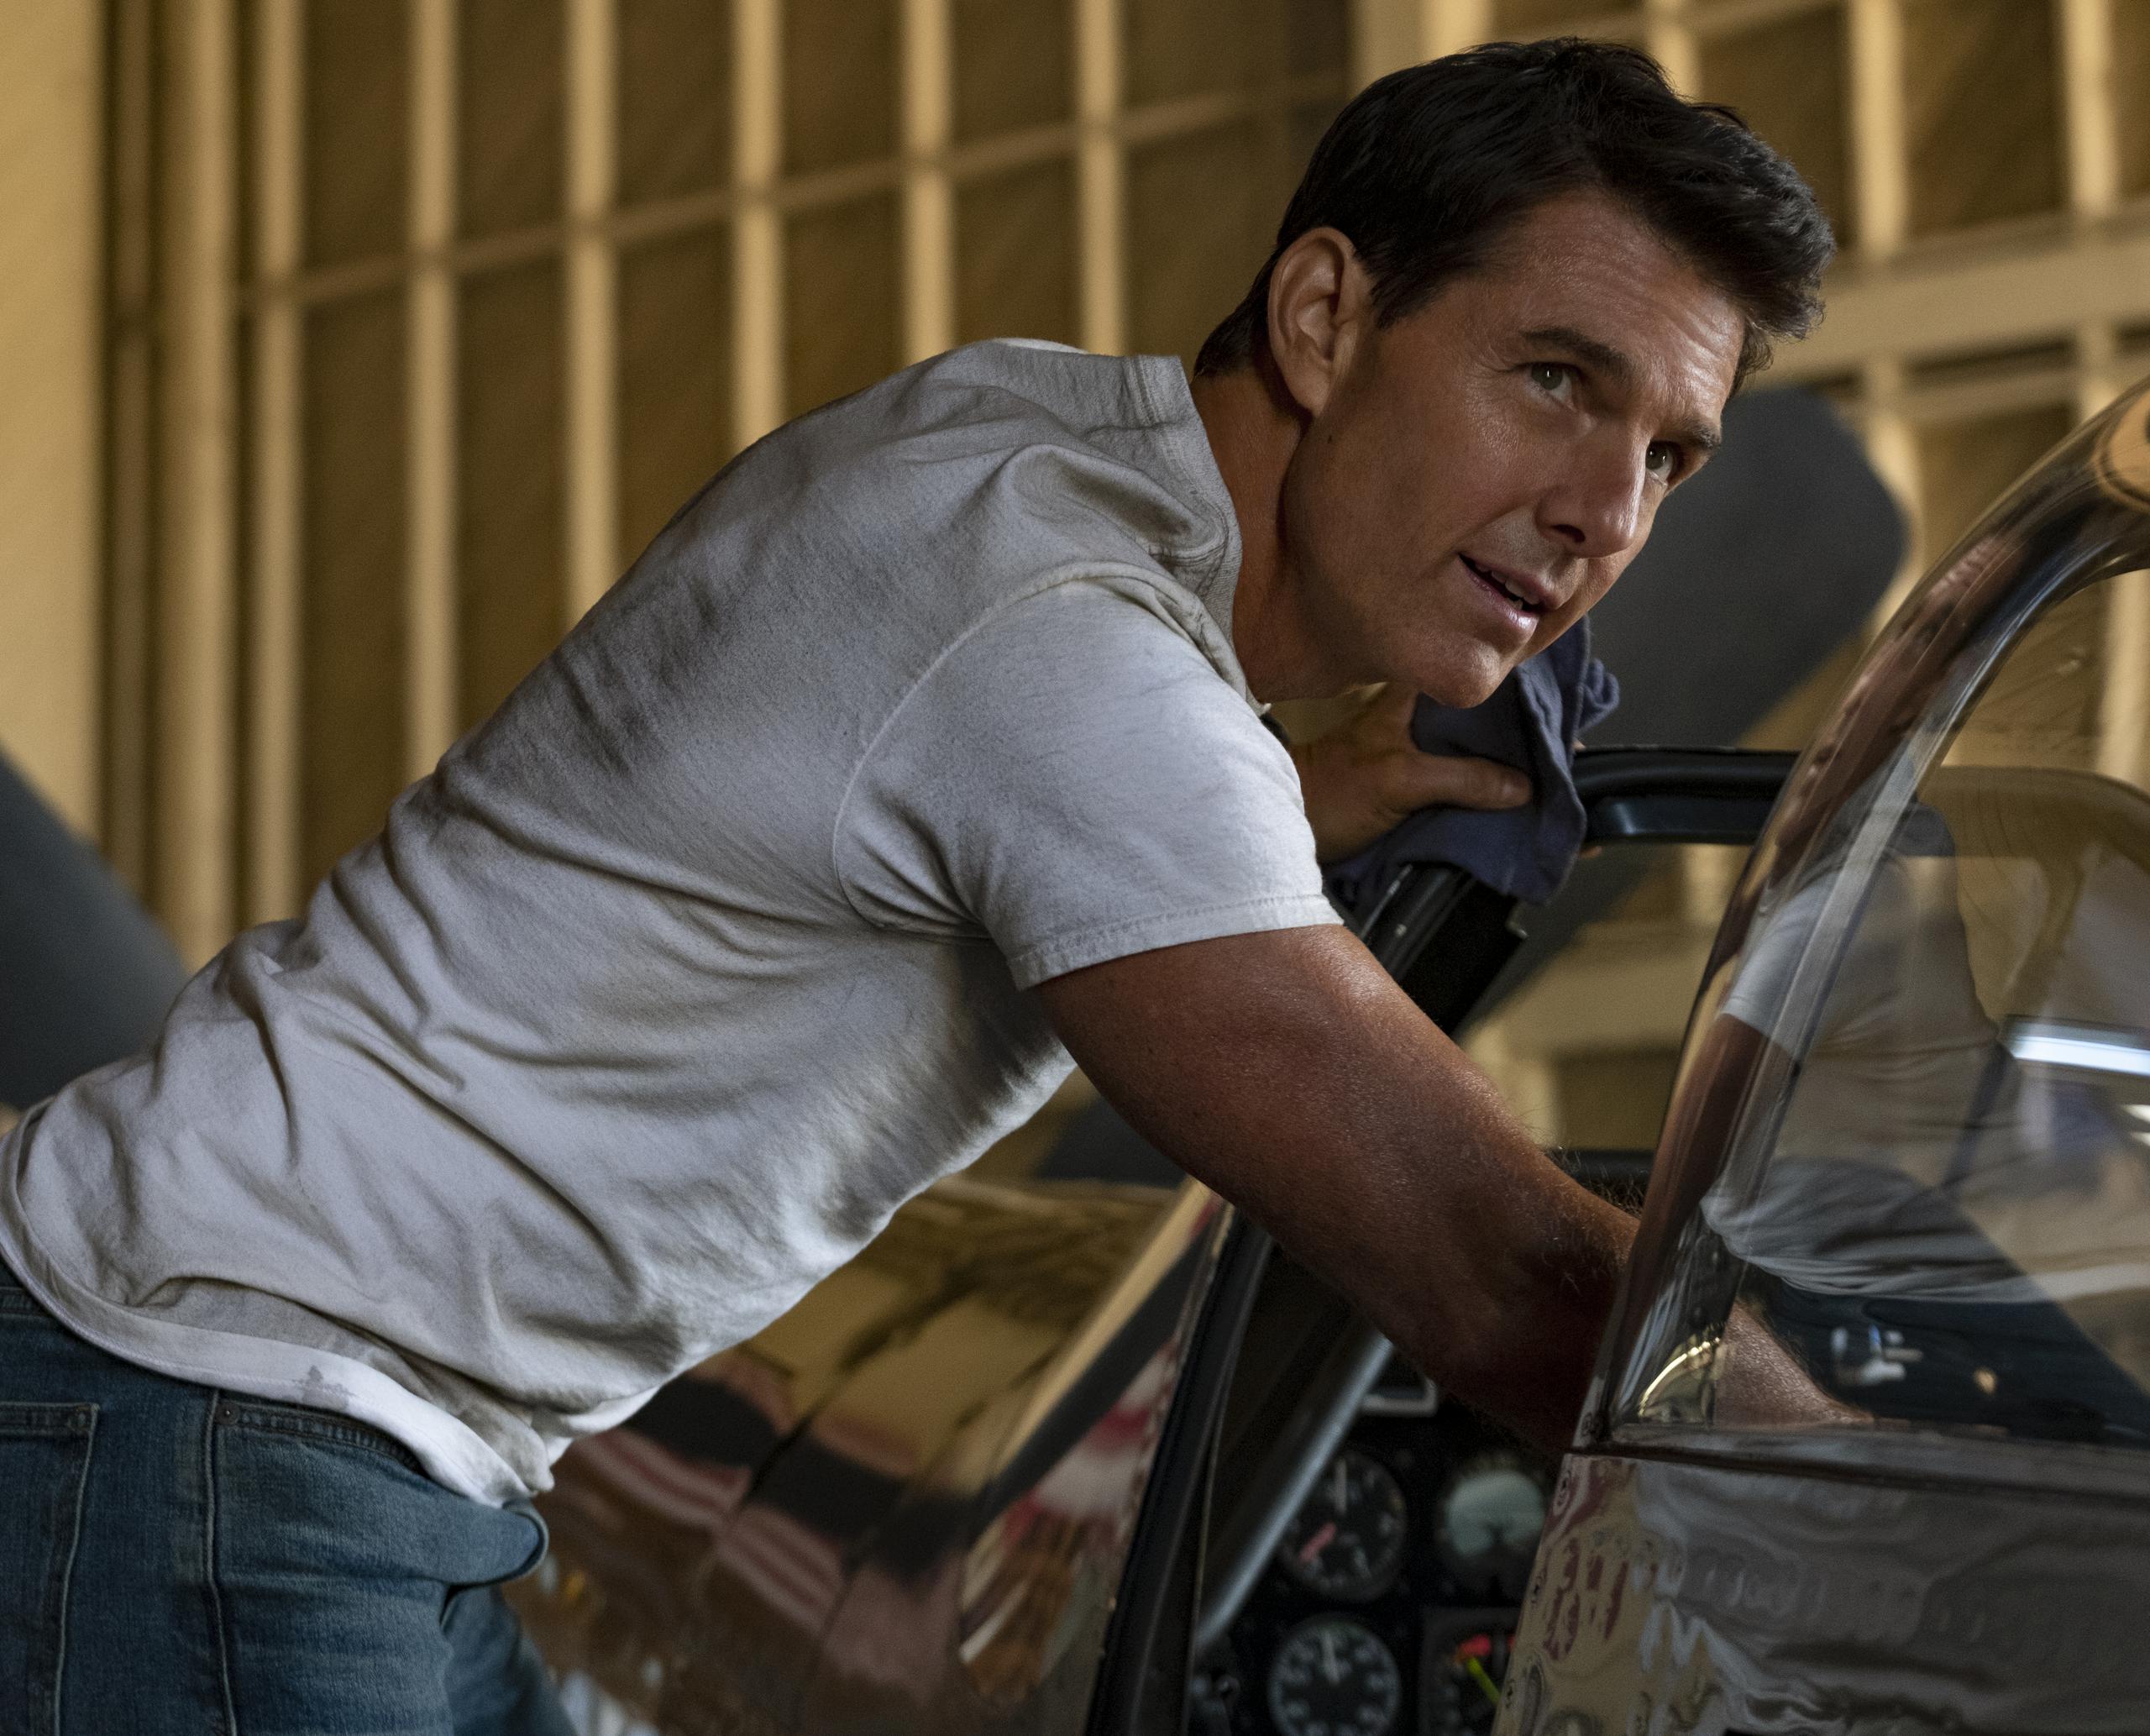 Tom Cruise as Maverick (image courtesy of Skydance)